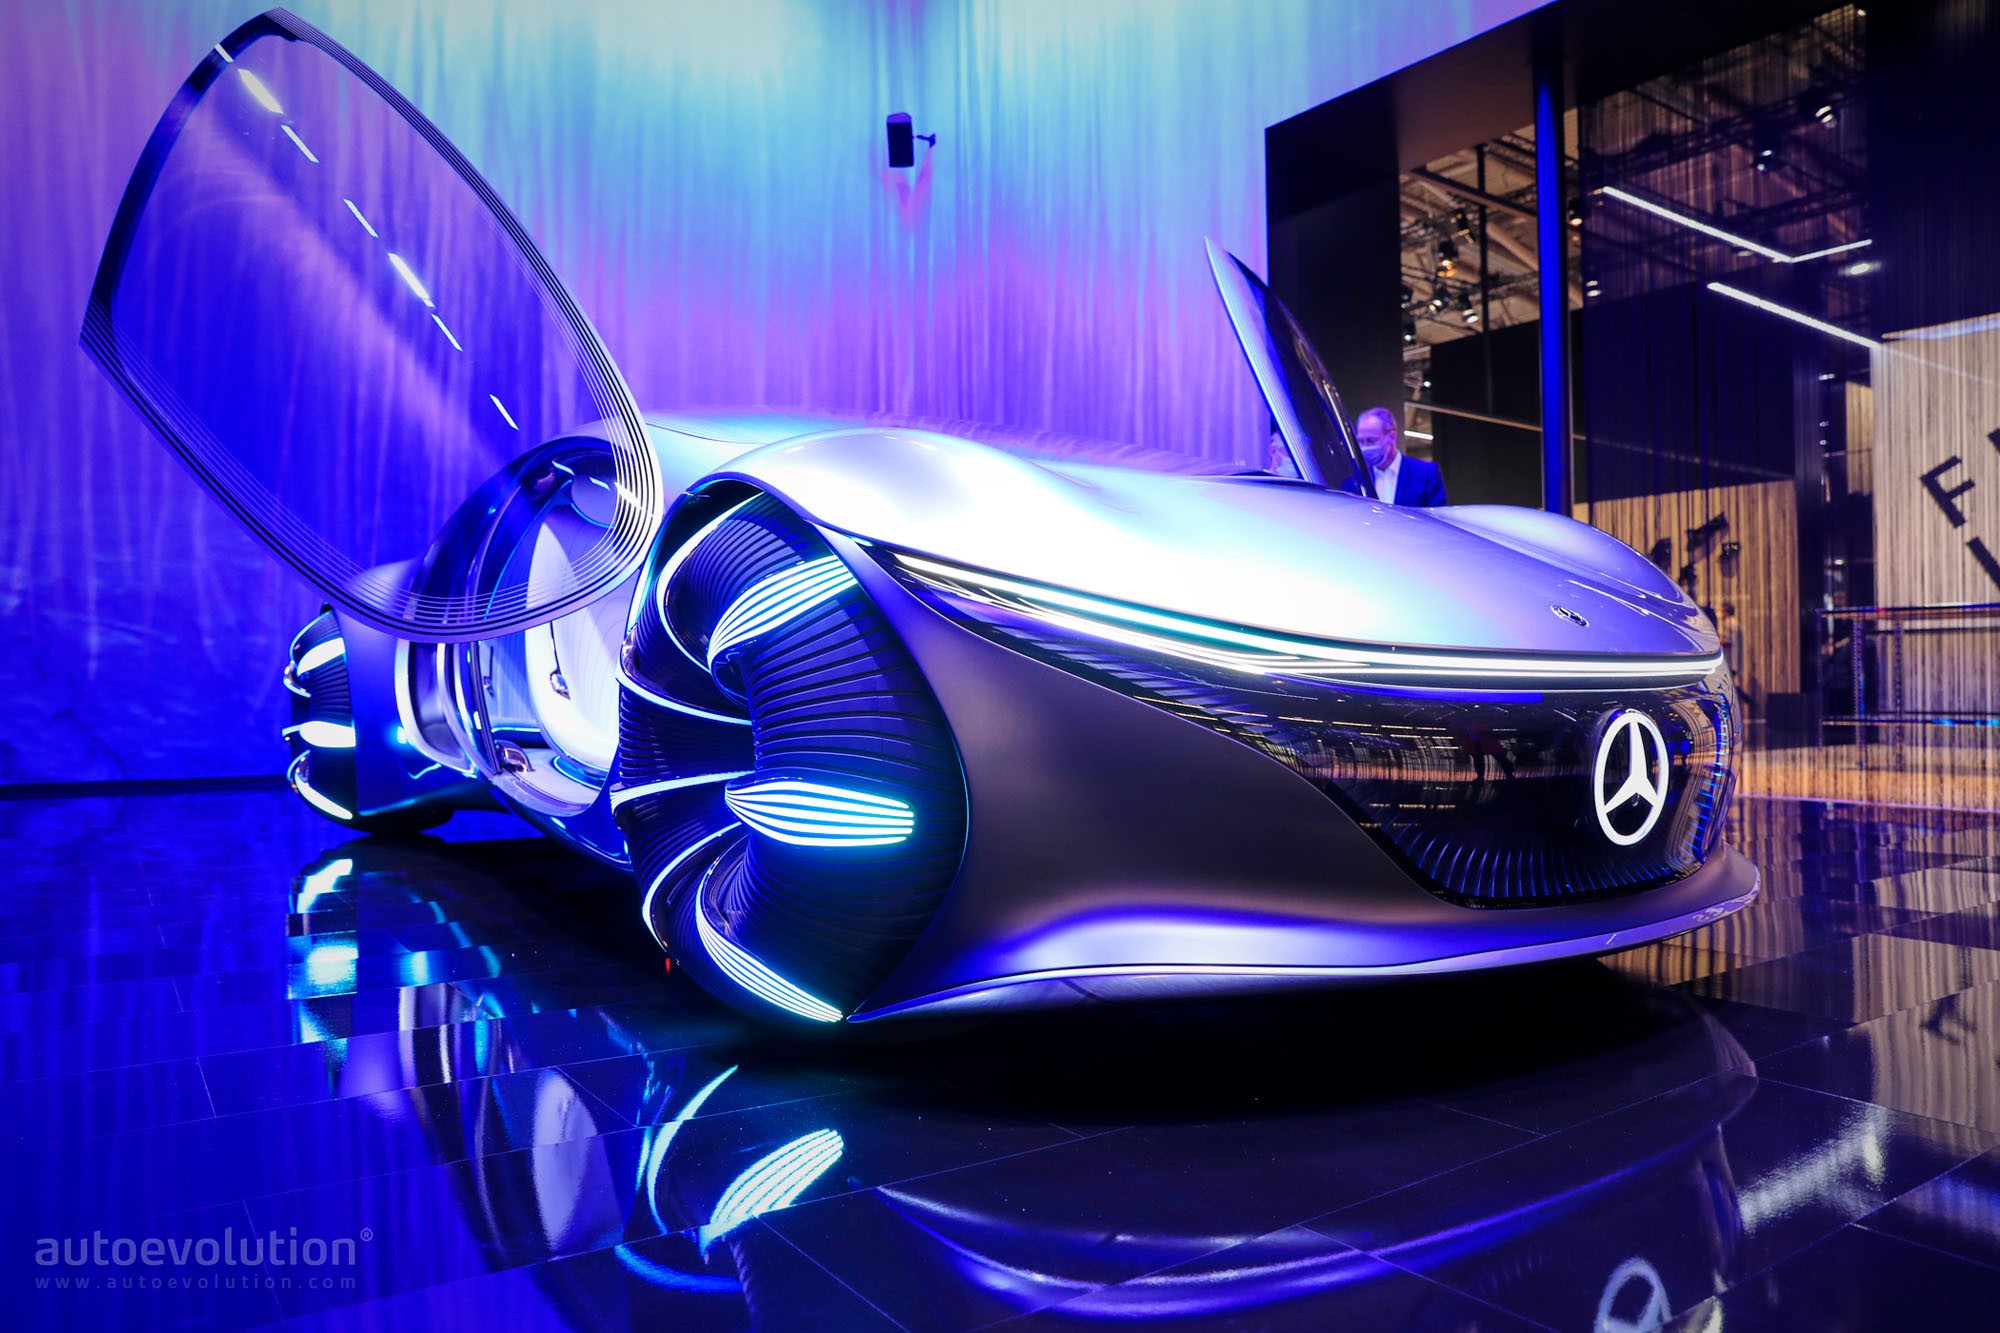 MercedesBenz desarrolla un auto futurista inspirado en Avatar  Video   CNN